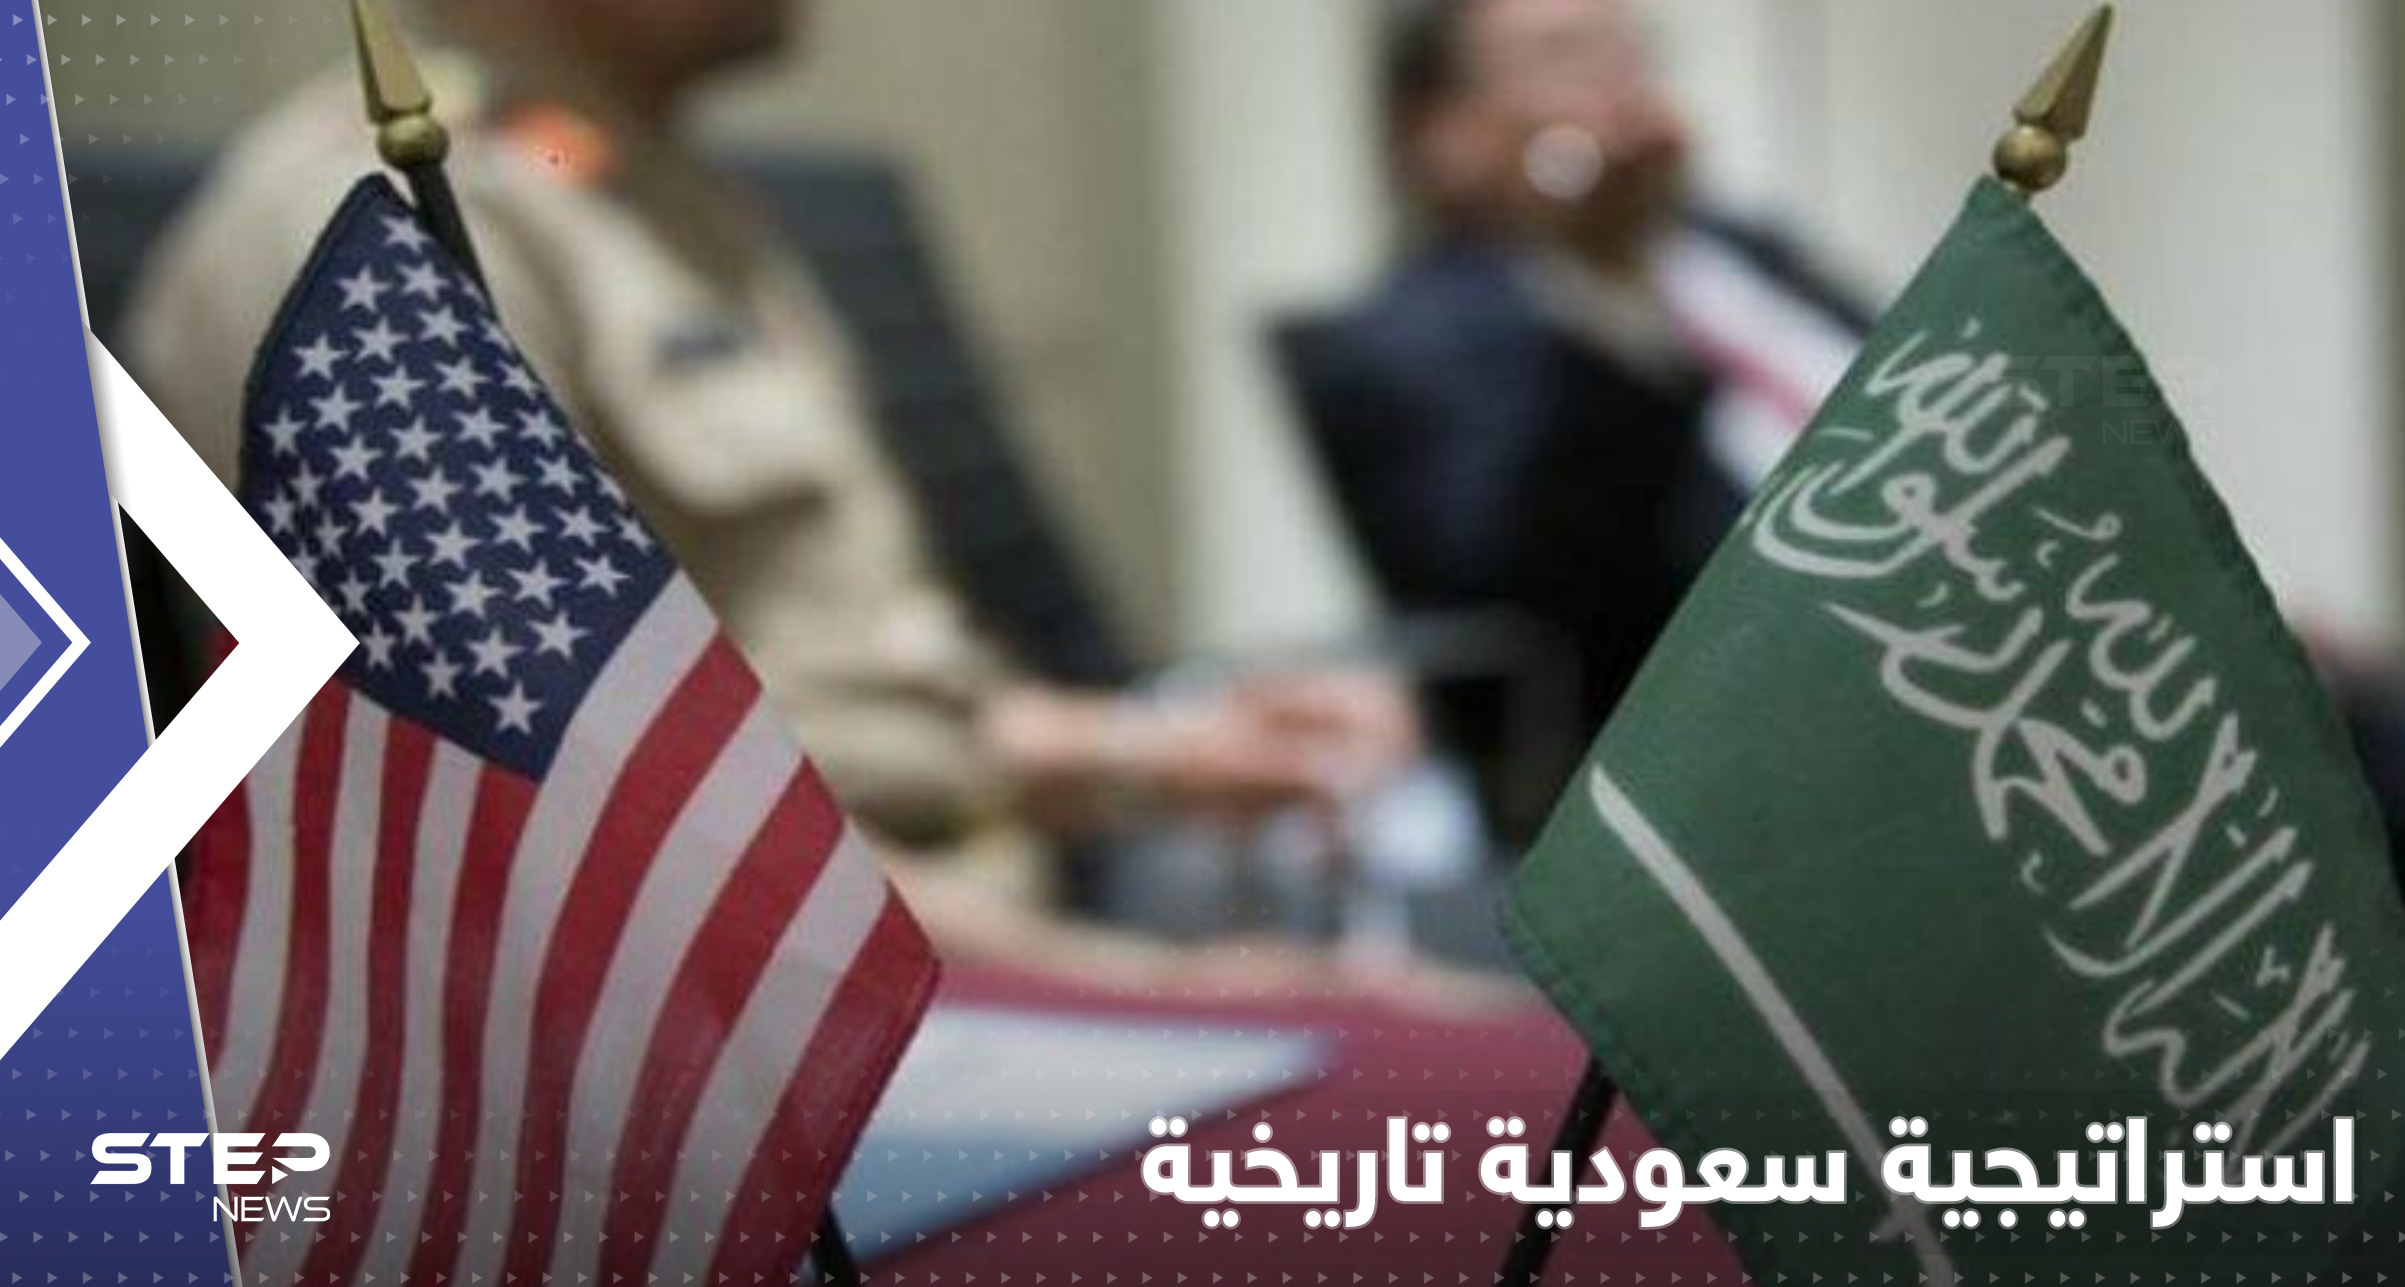 استراتيجية دفاعية لأول مرّة بتاريخ السعودية وجنرال أمريكي يكشف "اتفاقات سرّية" 